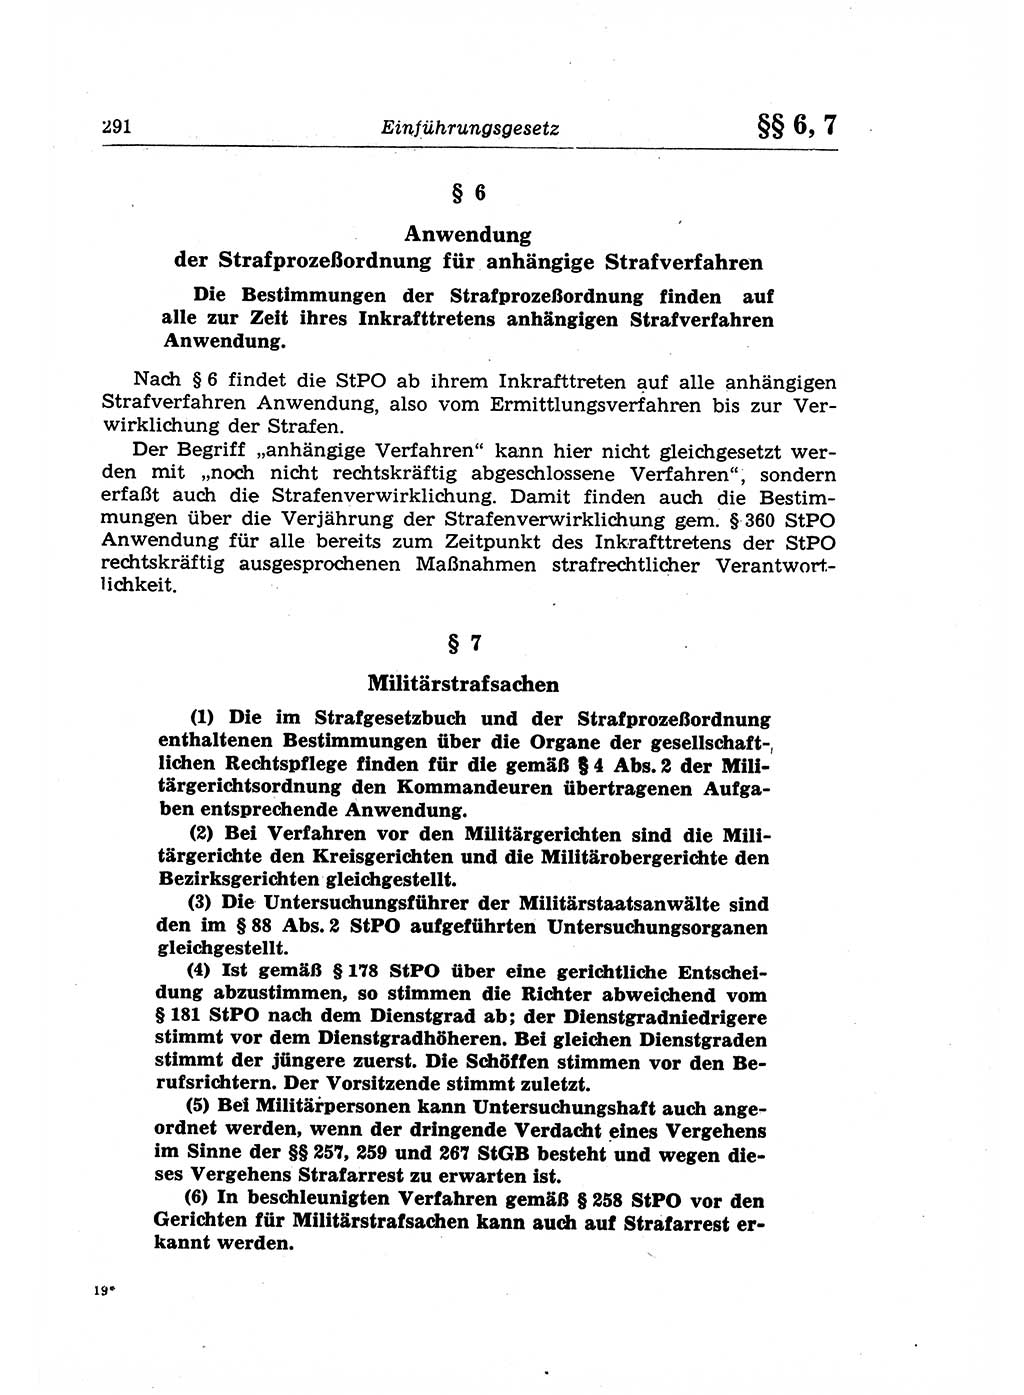 Strafrecht der Deutschen Demokratischen Republik (DDR), Lehrkommentar zum Strafgesetzbuch (StGB), Allgemeiner Teil 1969, Seite 291 (Strafr. DDR Lehrkomm. StGB AT 1969, S. 291)